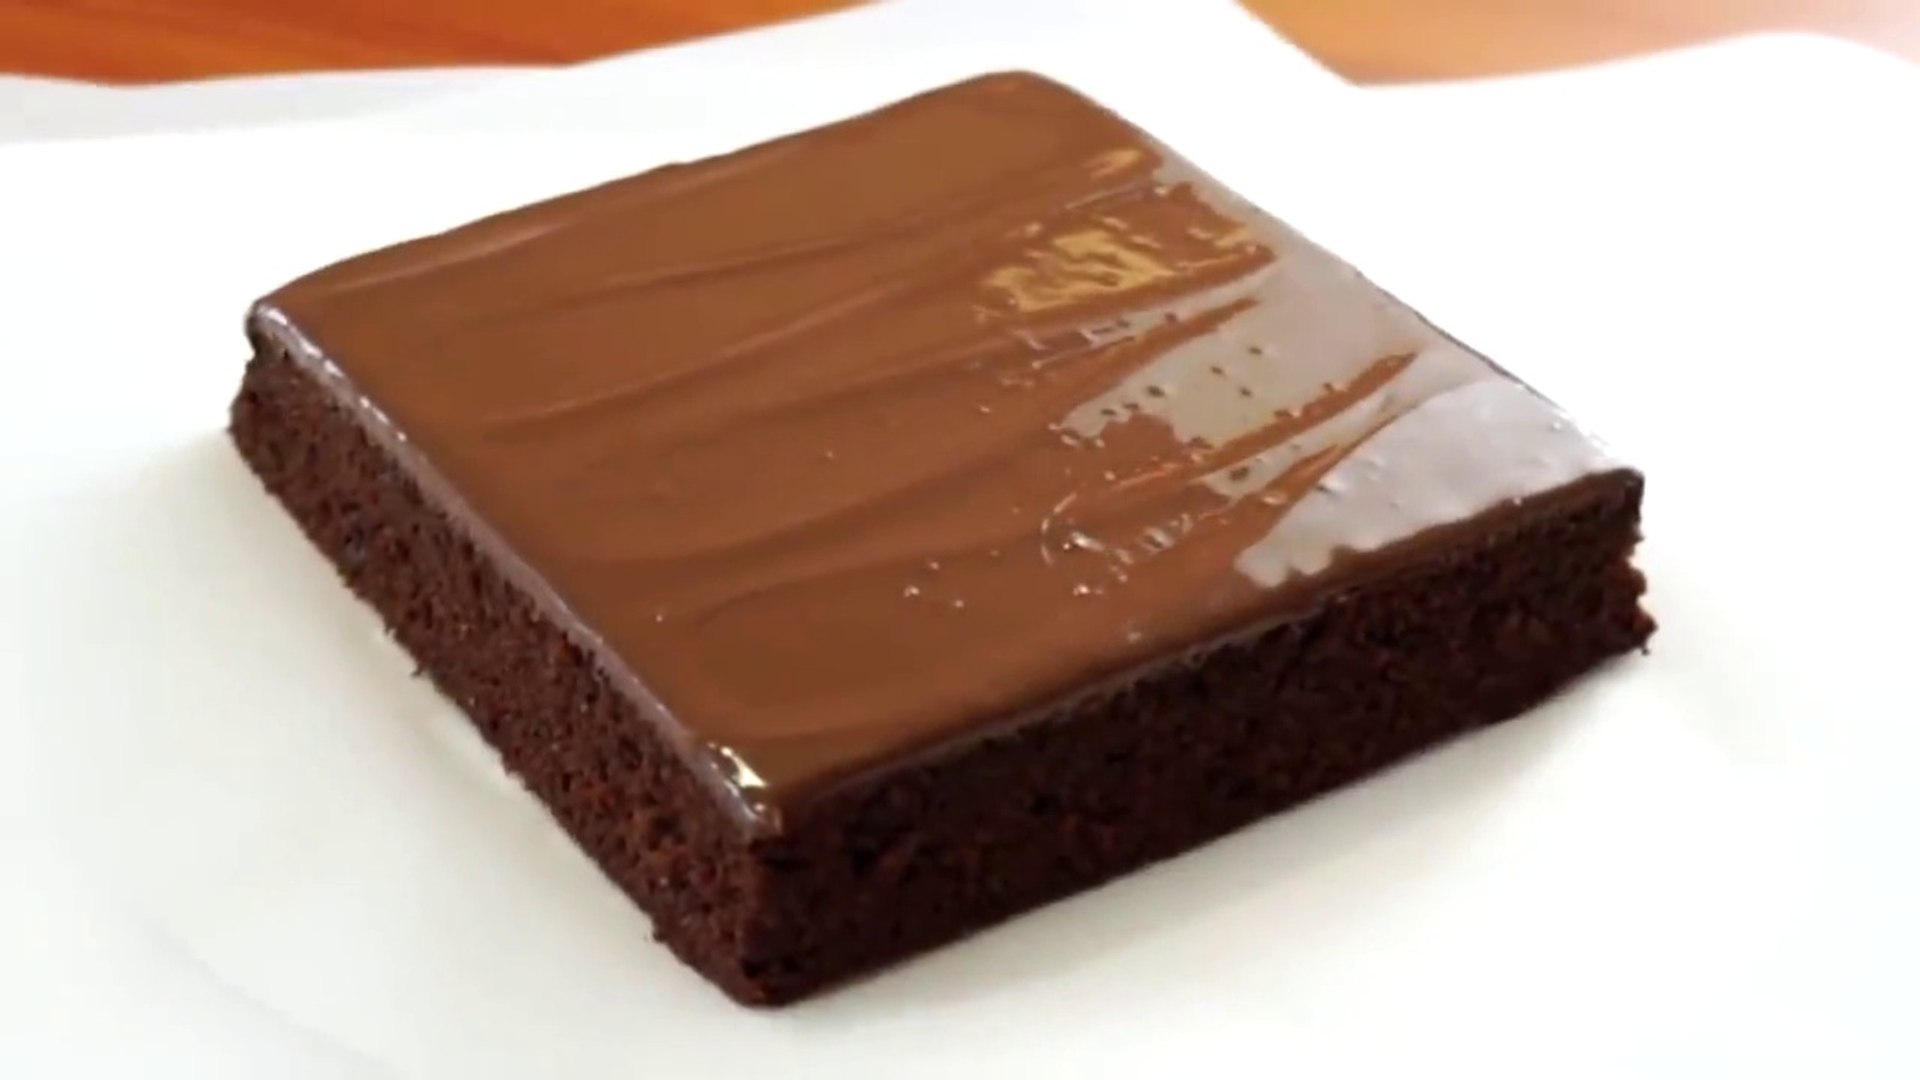 Κέικ σοκολάτας συνταγή – lockdown: Η viral “γλυκιά αμαρτία” με τα 14 εκατ. views